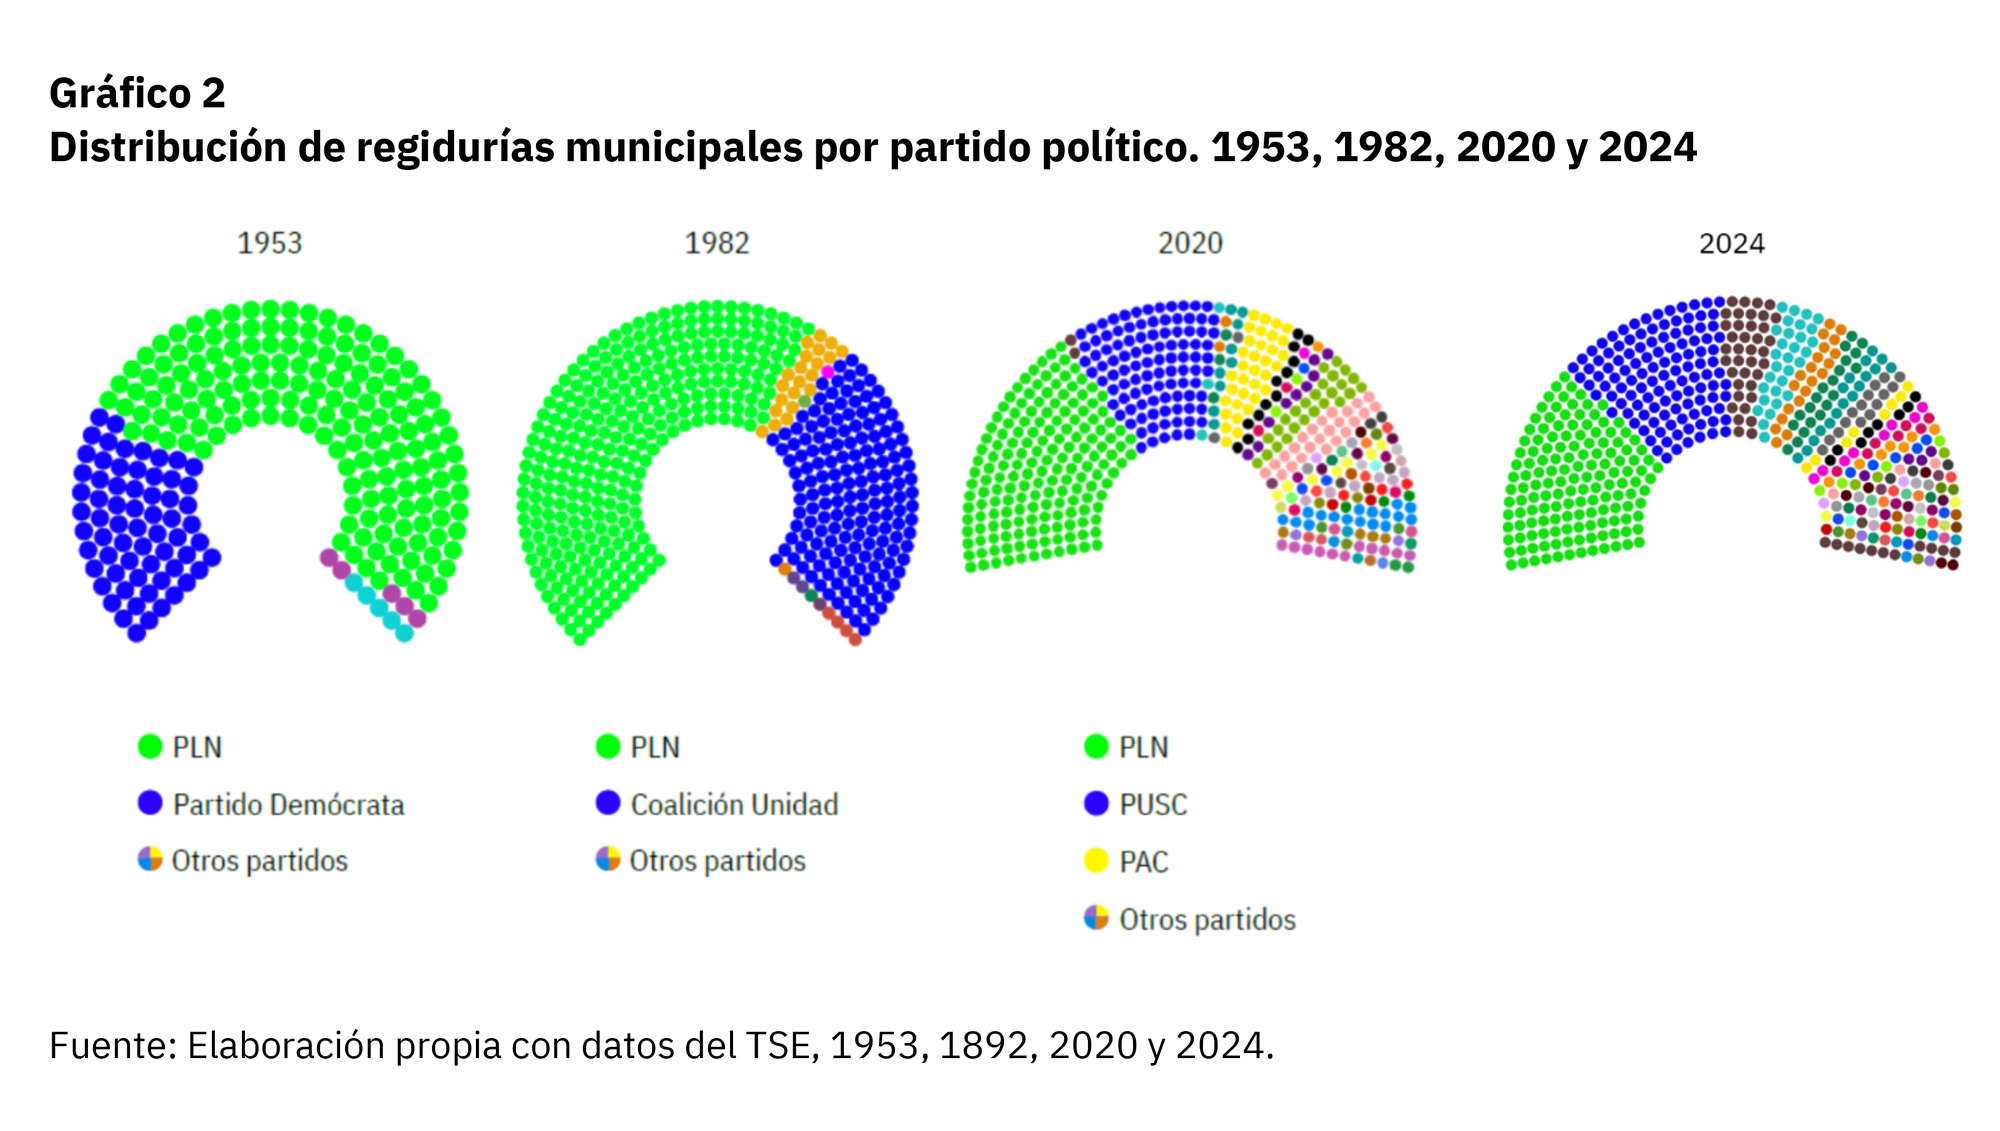 Gráfico de distribución de regidurías en elecciones 2024